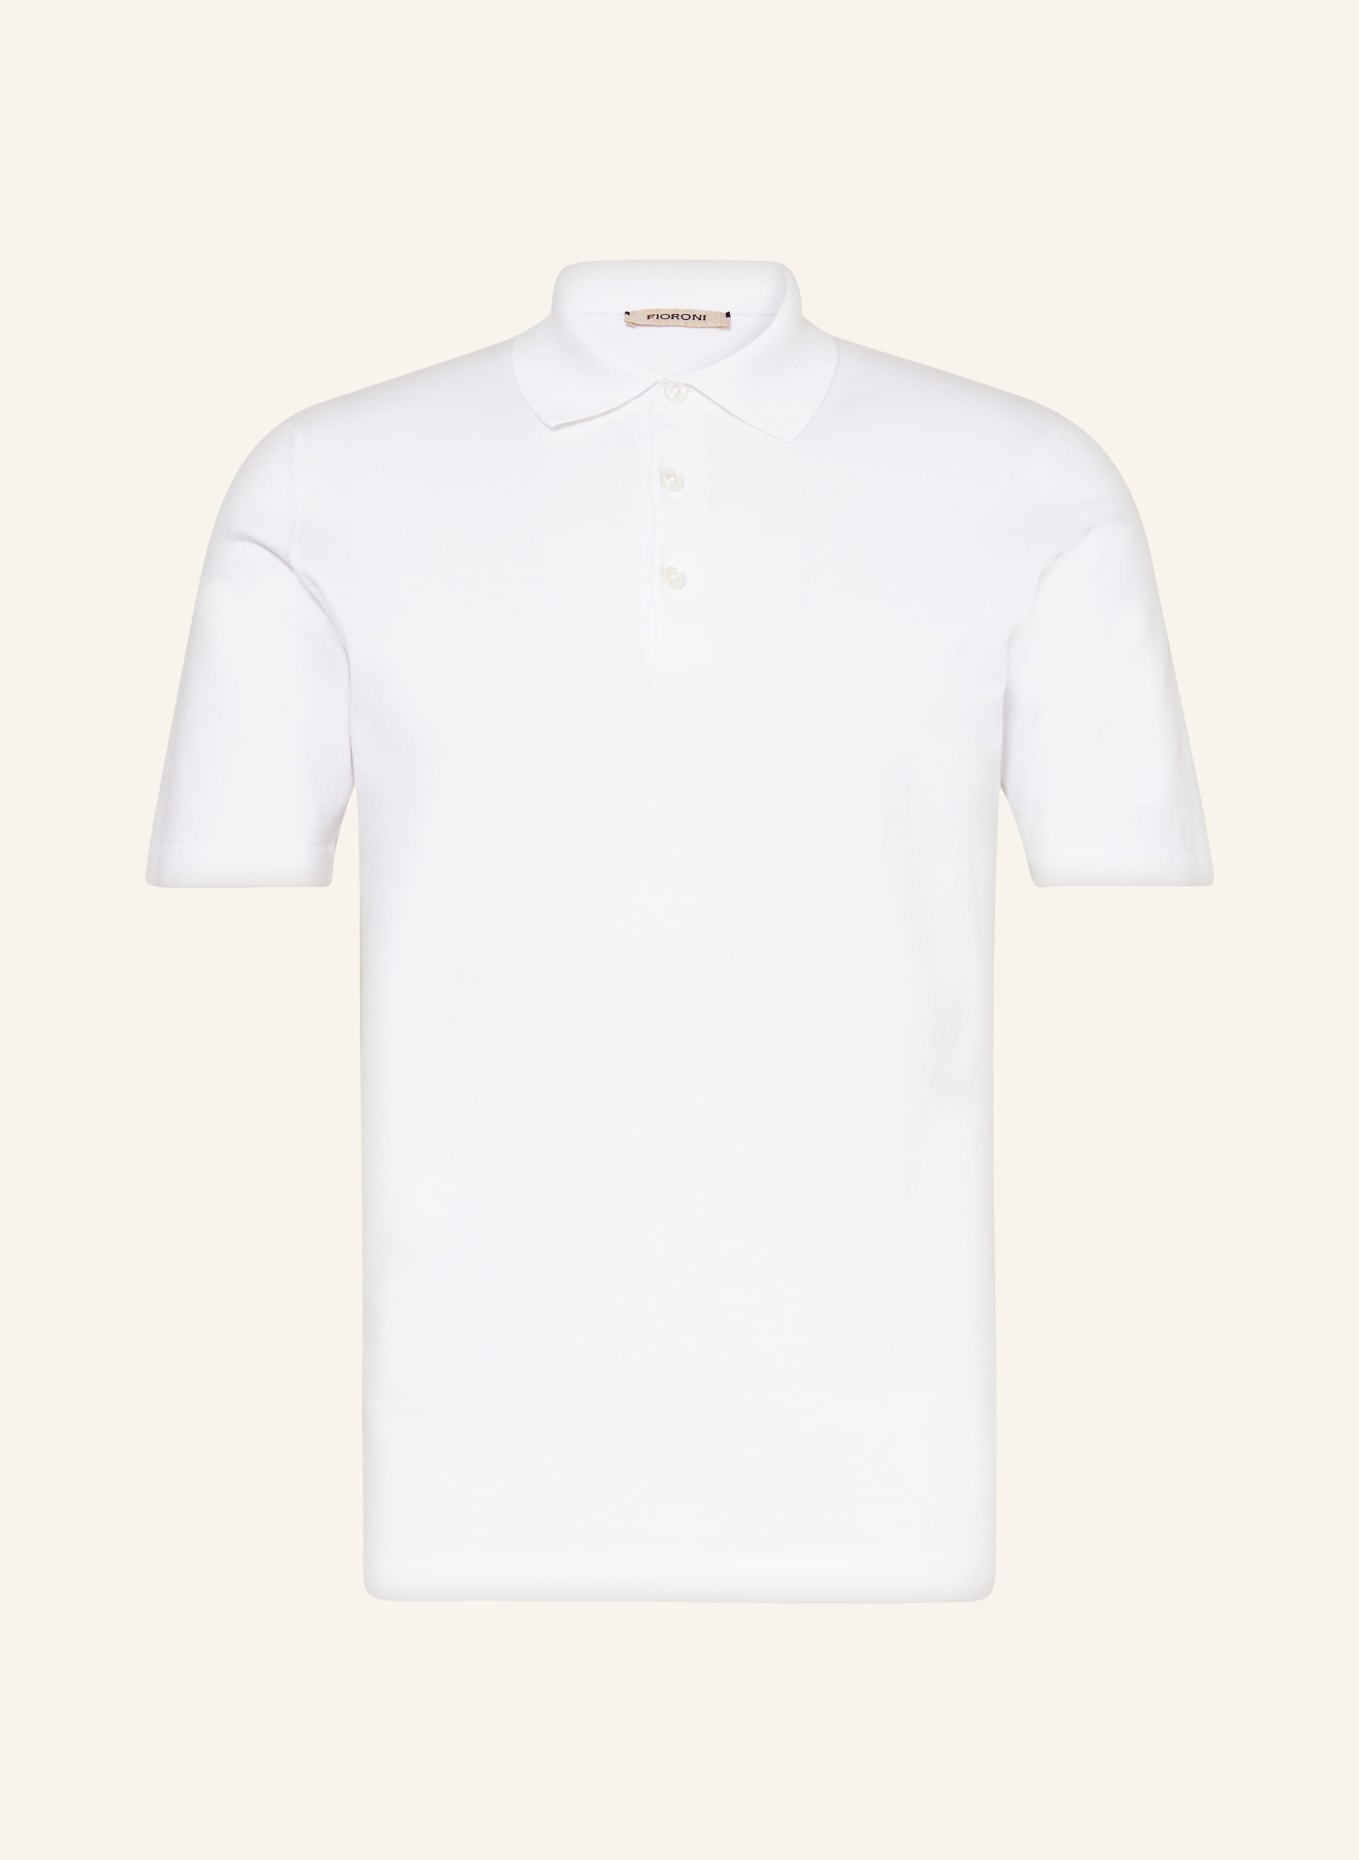 FIORONI Strick-Poloshirt, Farbe: WEISS (Bild 1)